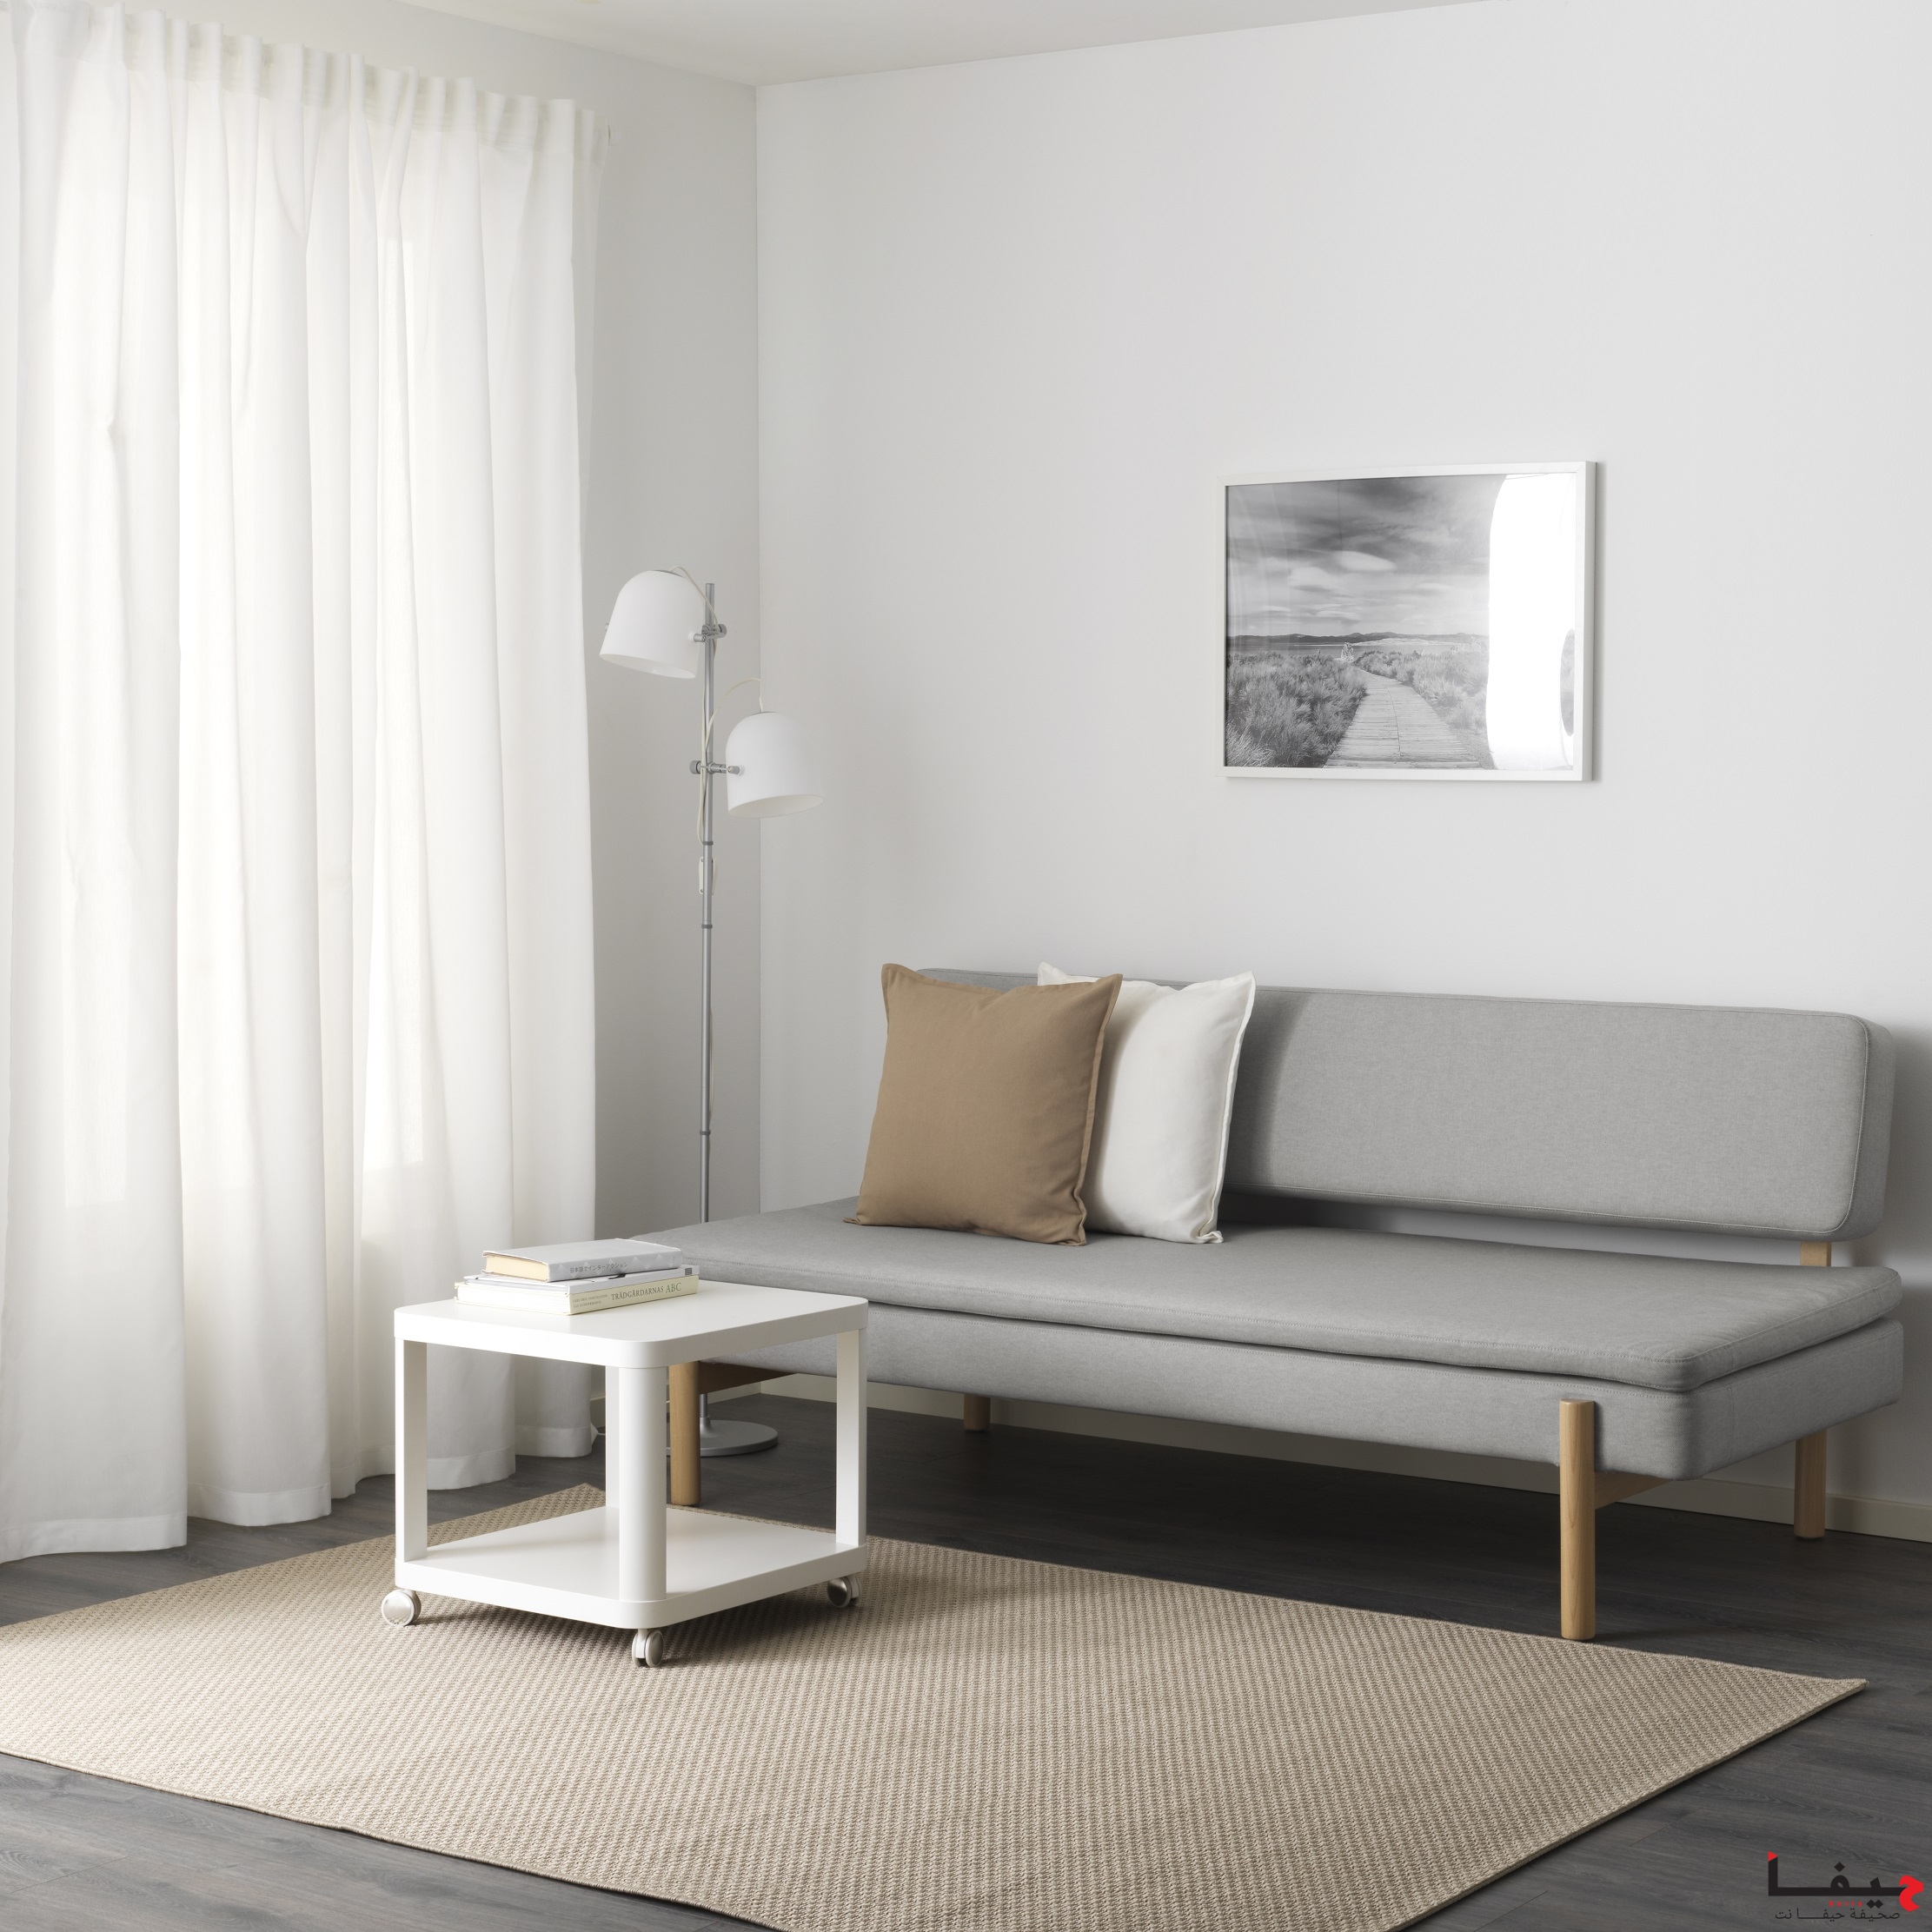 IKEA קולקציית YPPERLIG ספה תלת מושבית תמונת אוירה מחיר 2695 שח צילום איקאה